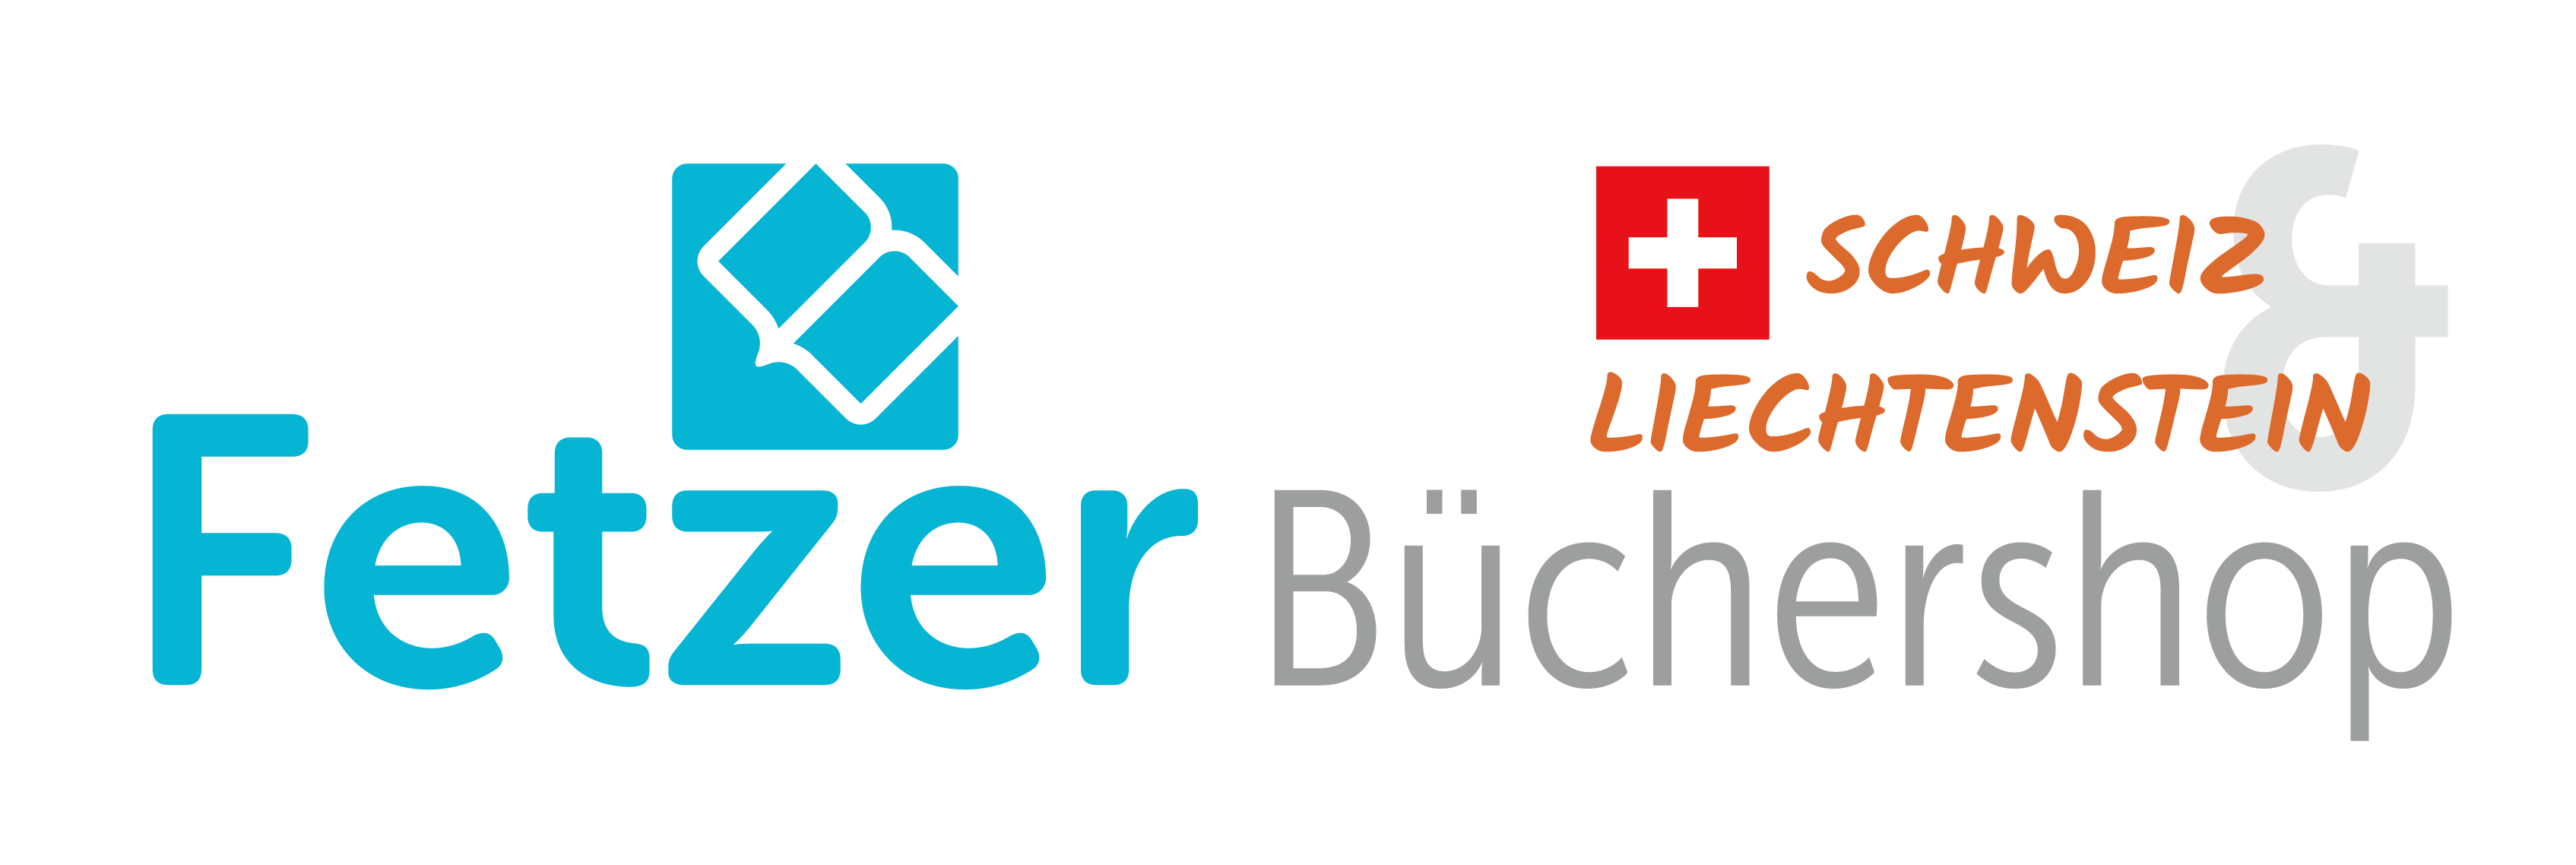 (c) Fetzer-buechershop.ch